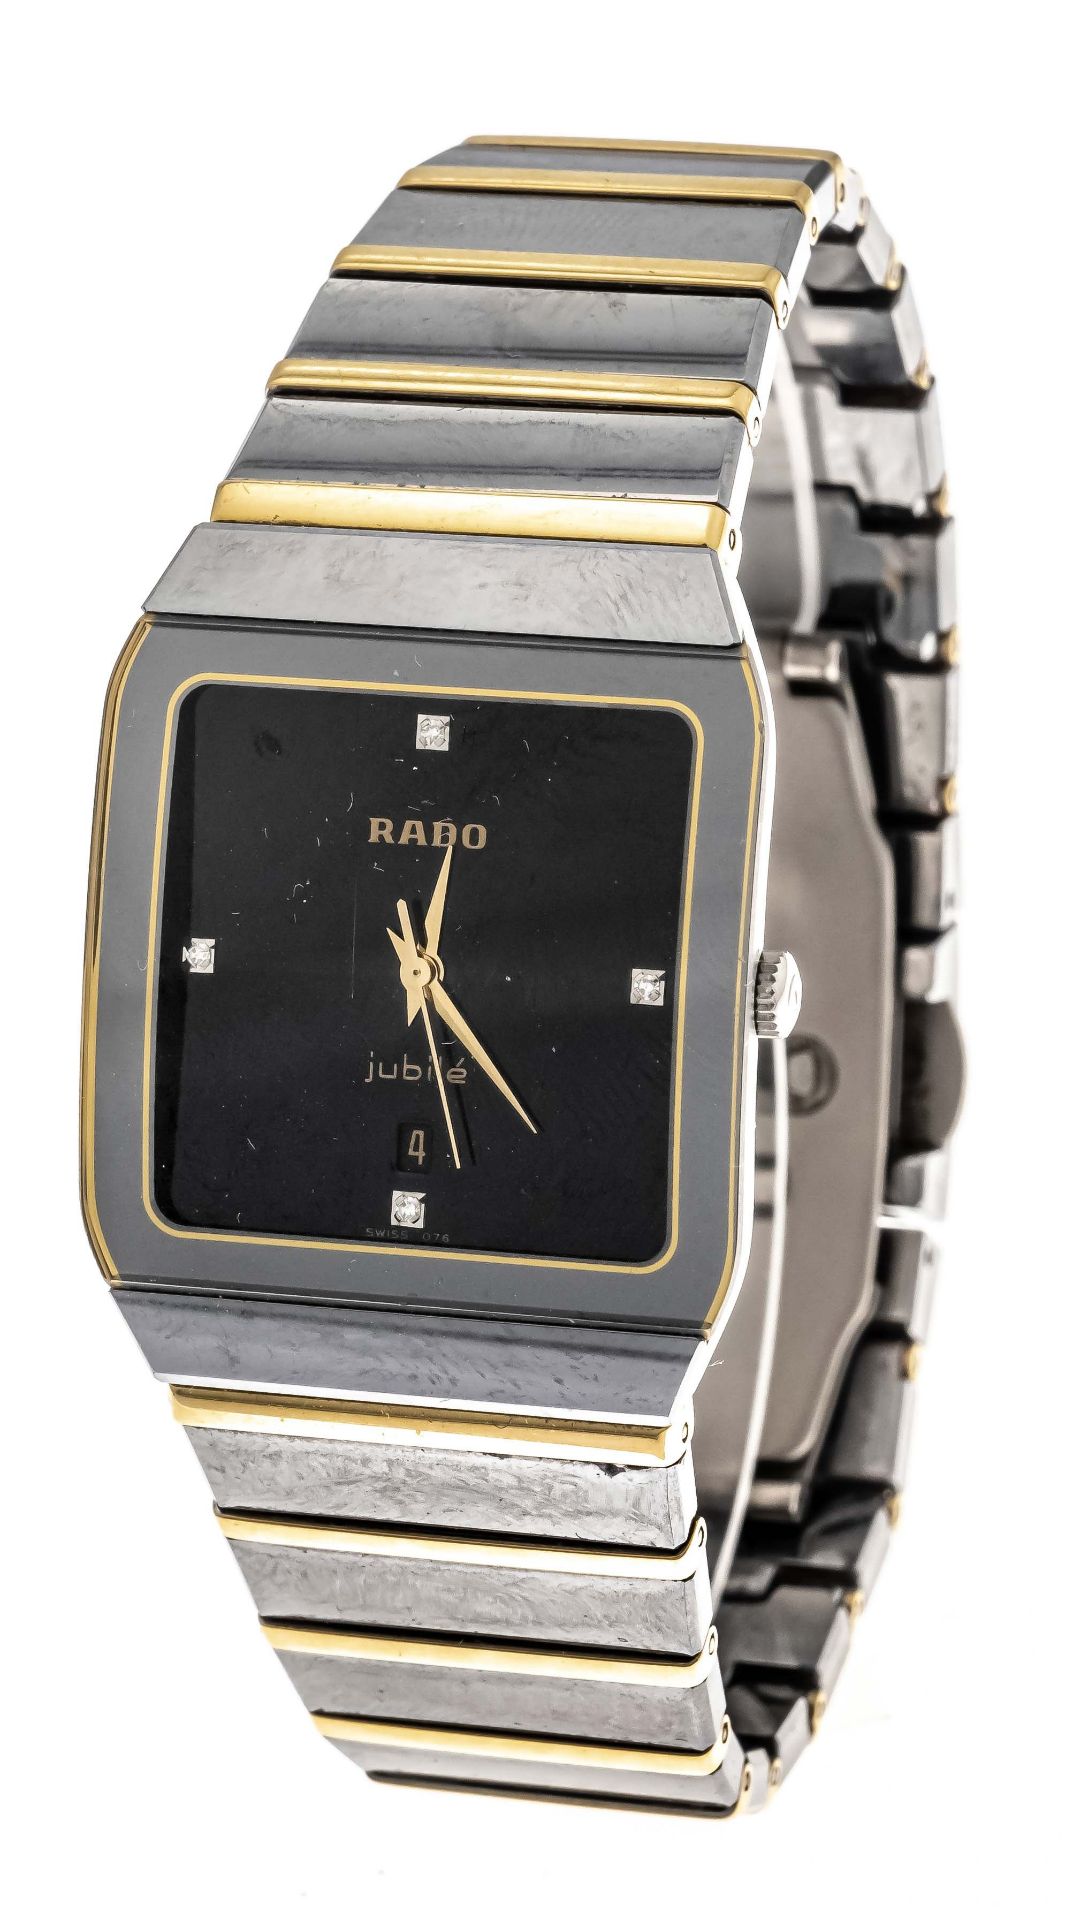 RADO Jubile` men's quartz watch, titanium ceramic, ref. 152.0366.3 circa 2000, black dial with 4